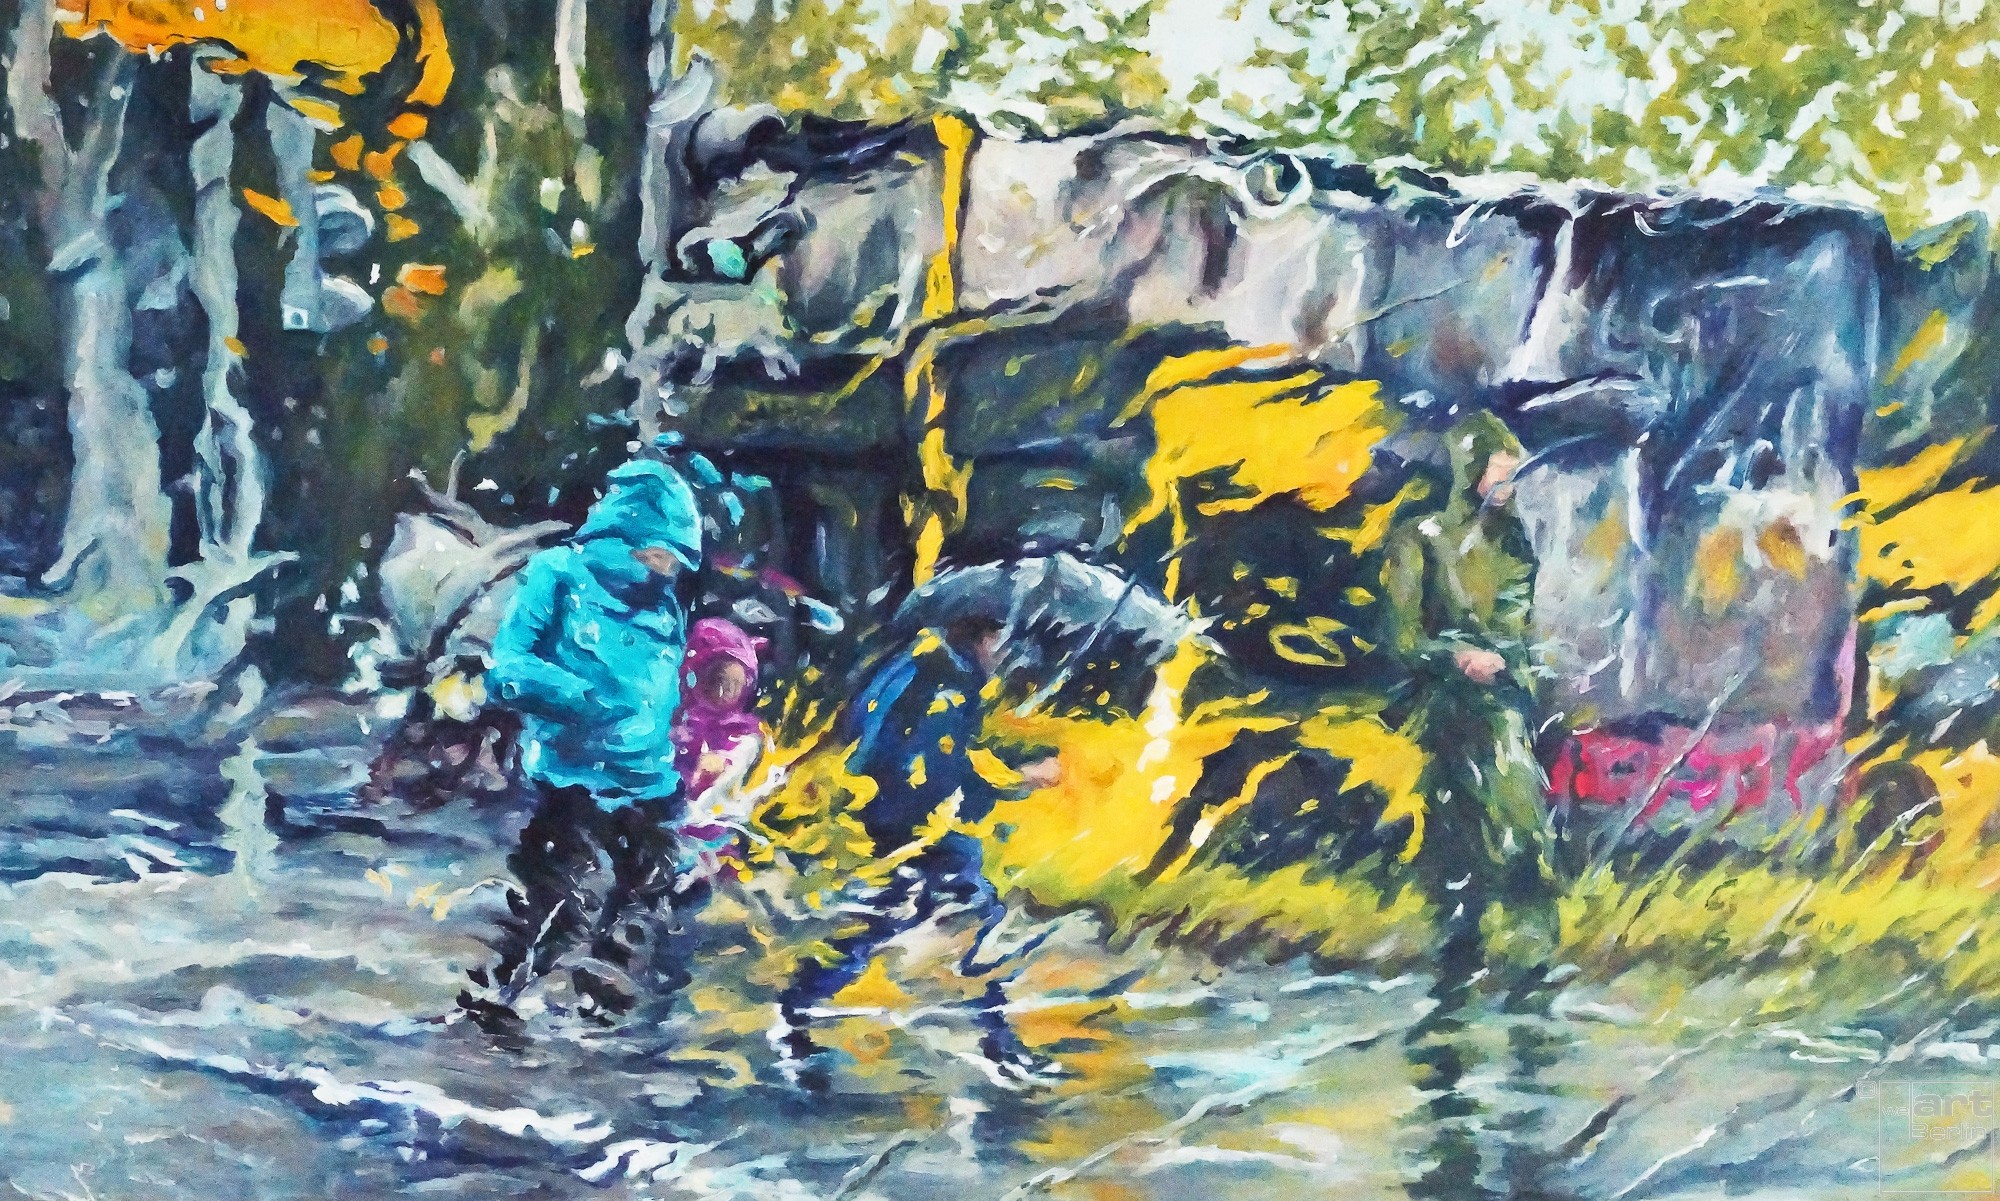 Pouring Rain | Malerei von Künstlerin Simone Westphal, Öl auf Leinw